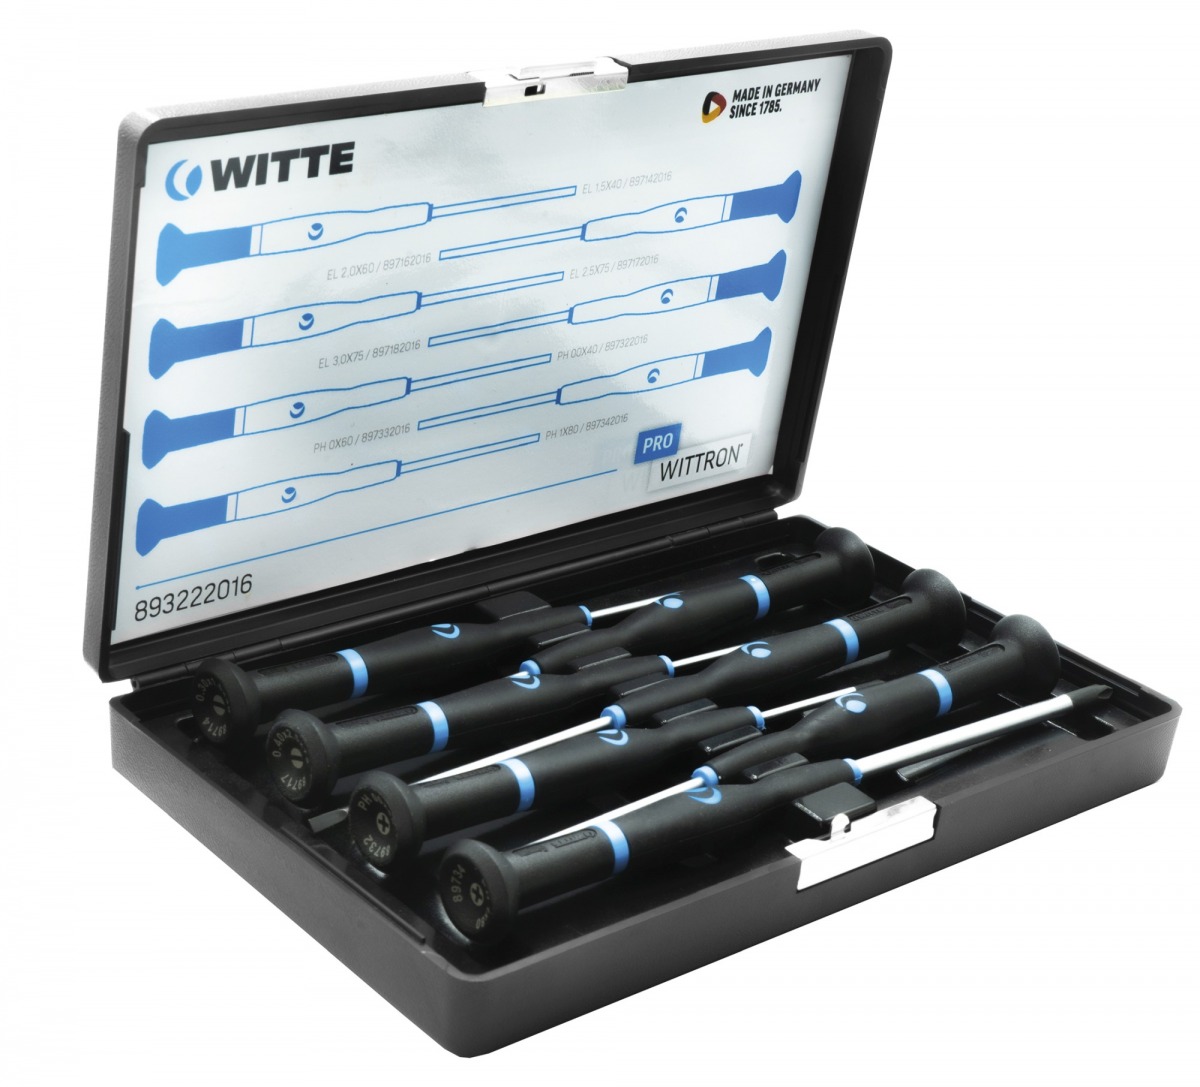 Juego de destornilladores de precisión WITTRON en estuche de plástico antichoque WIT-89328 | DESTORNILLADORES